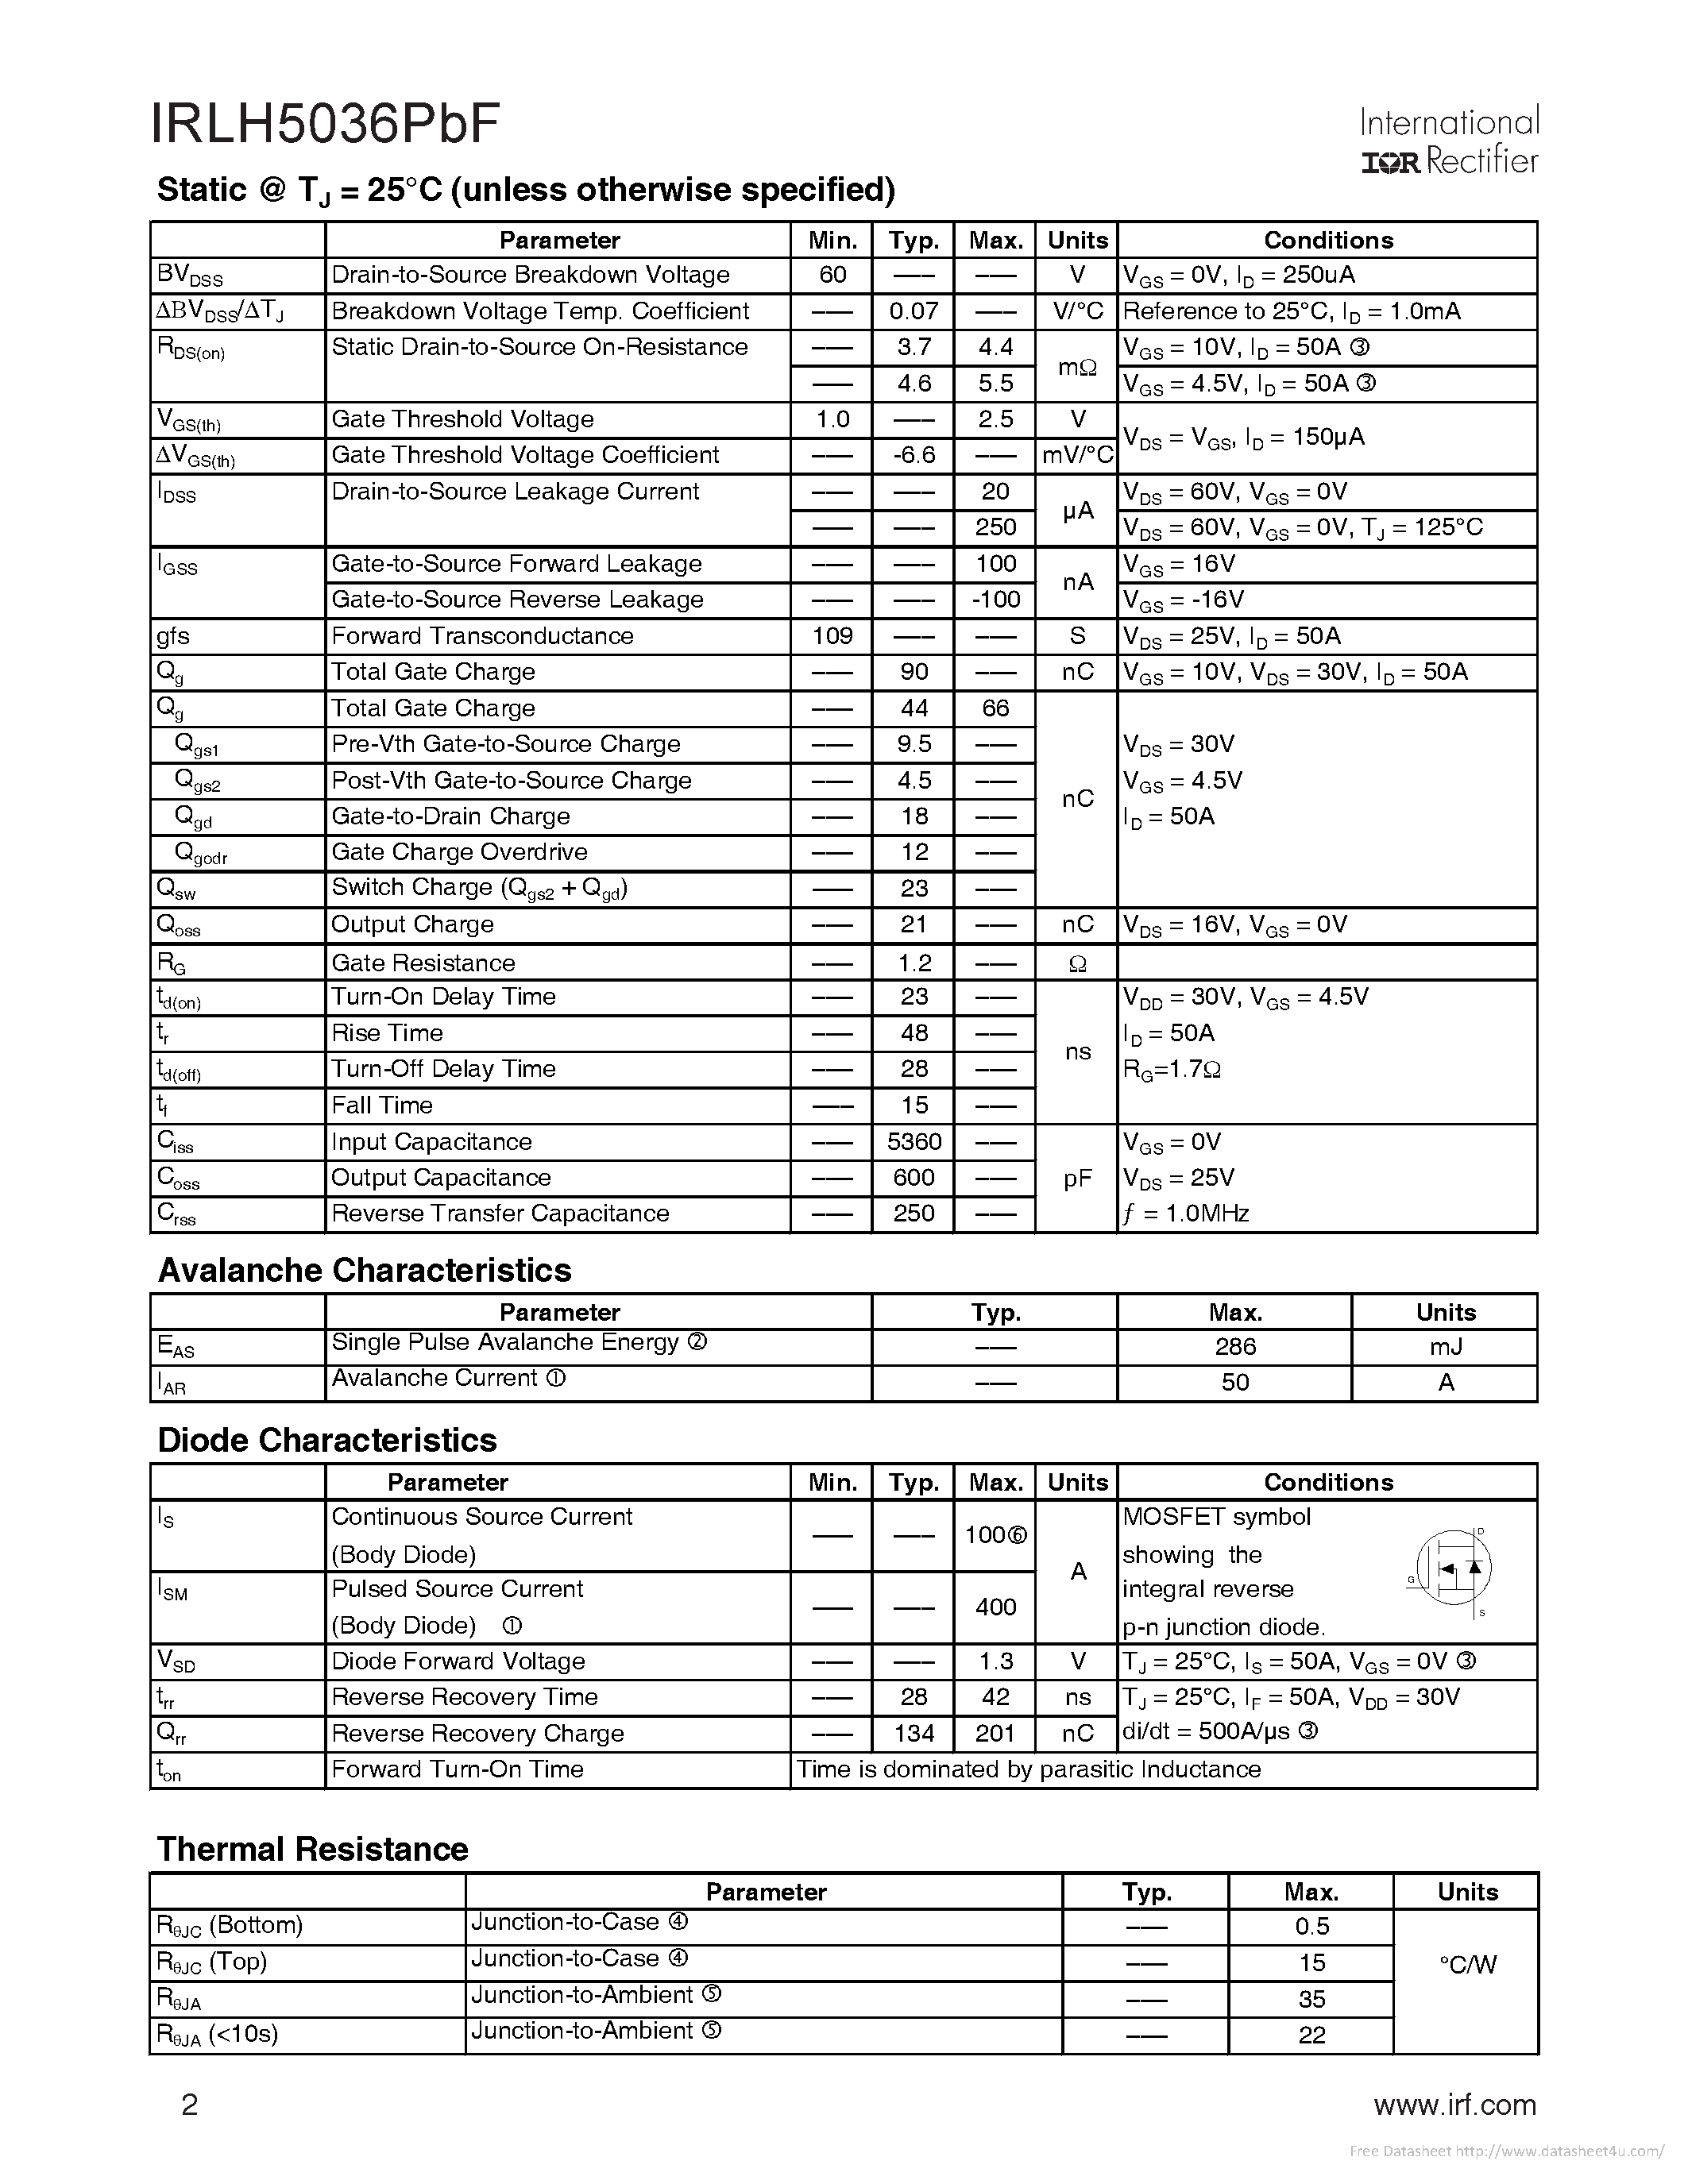 Datasheet IRLH5036PBF - page 2